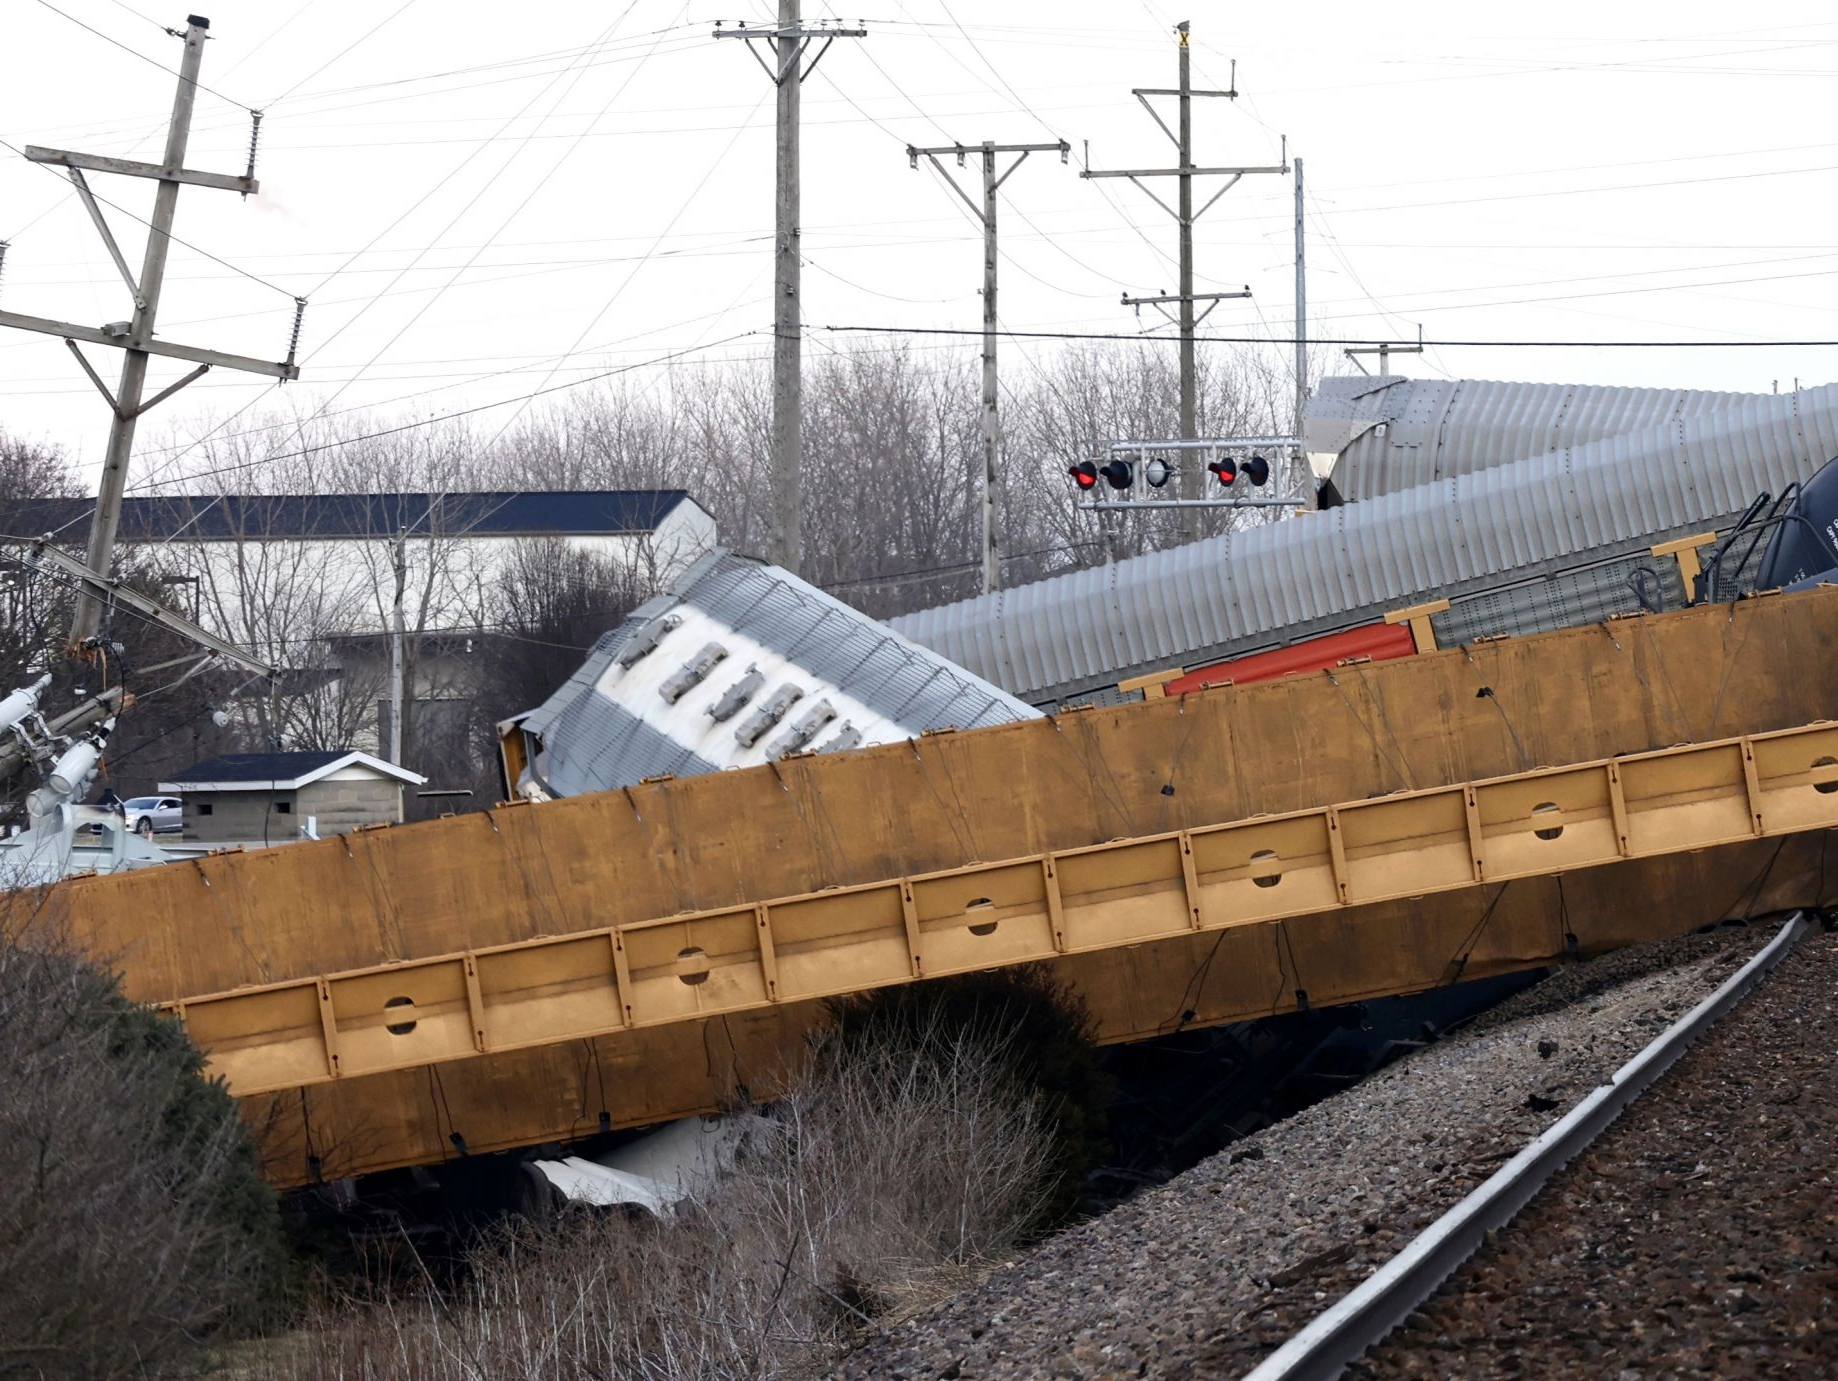 美国俄亥俄州发生火车与卡车相撞事故 致一人死亡